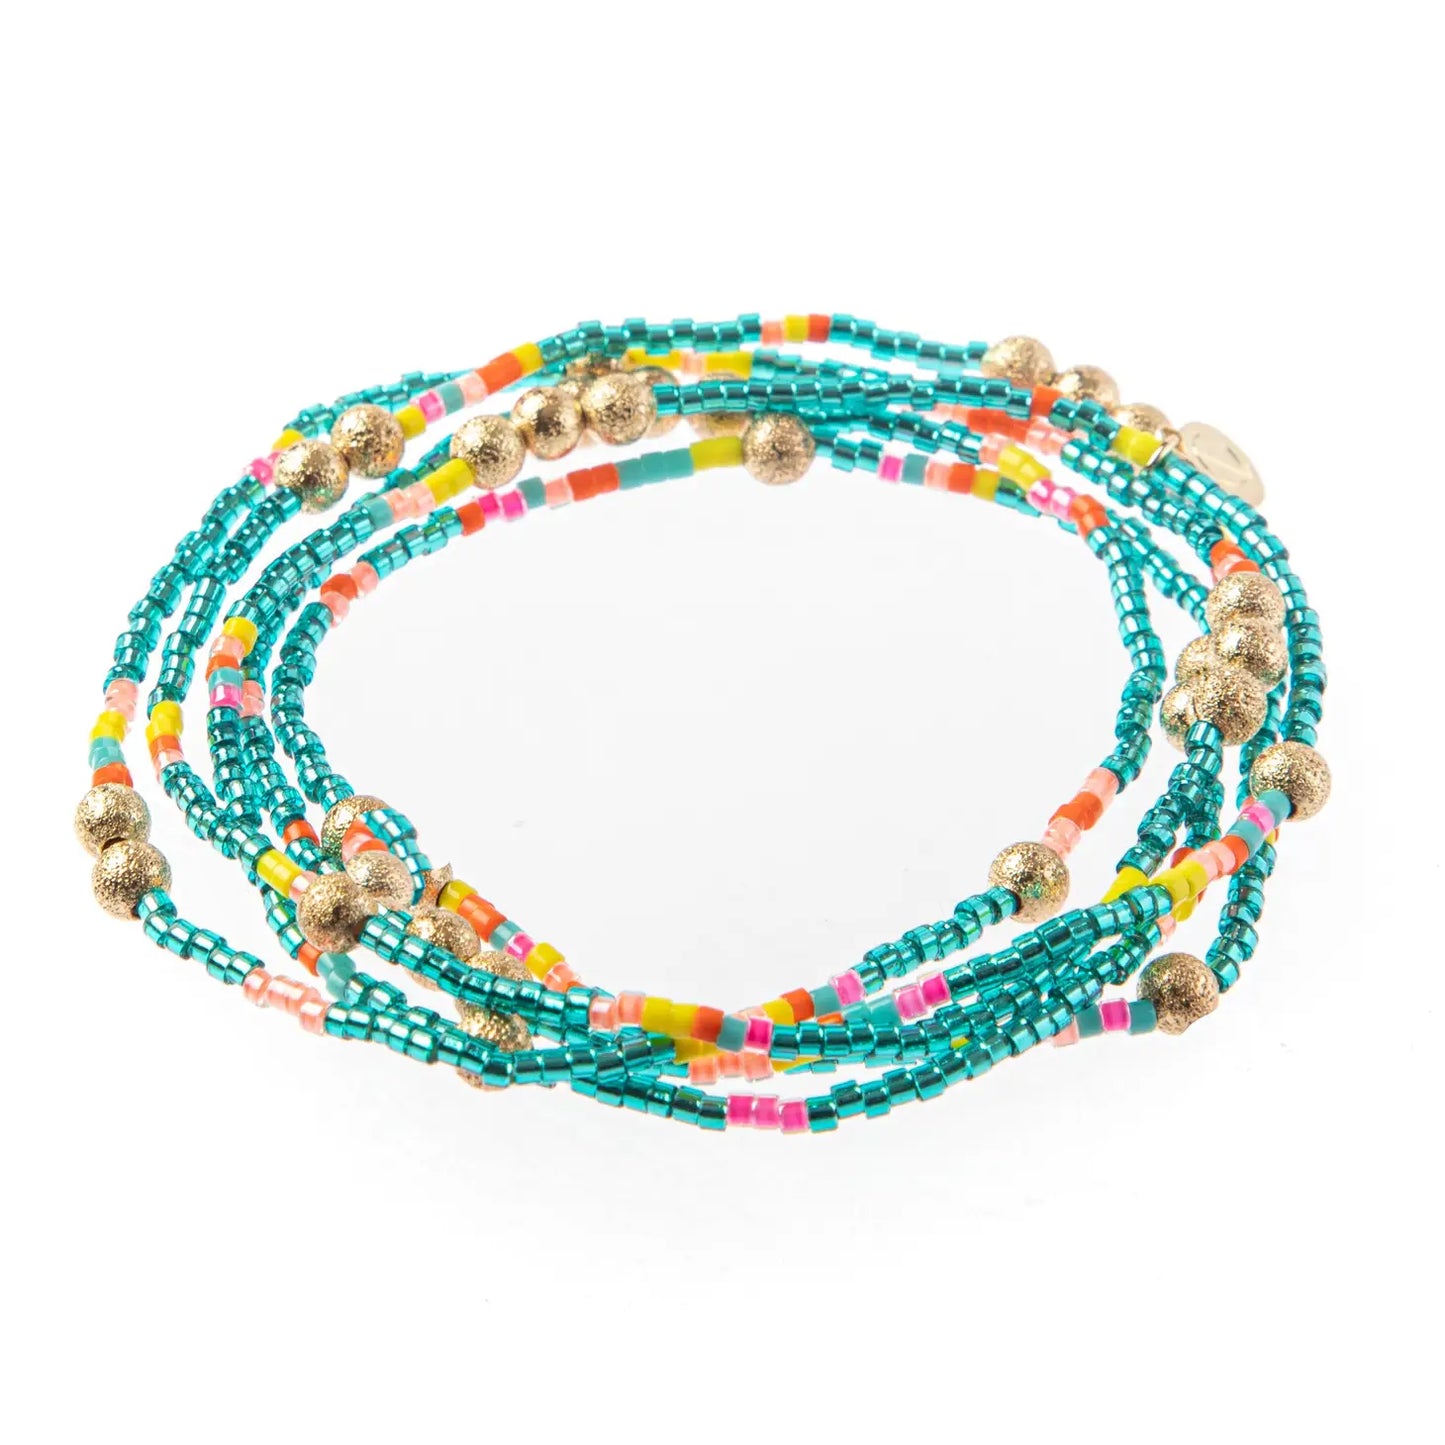 Malibu Wrap Bracelet/Necklace - Turquoise Multi